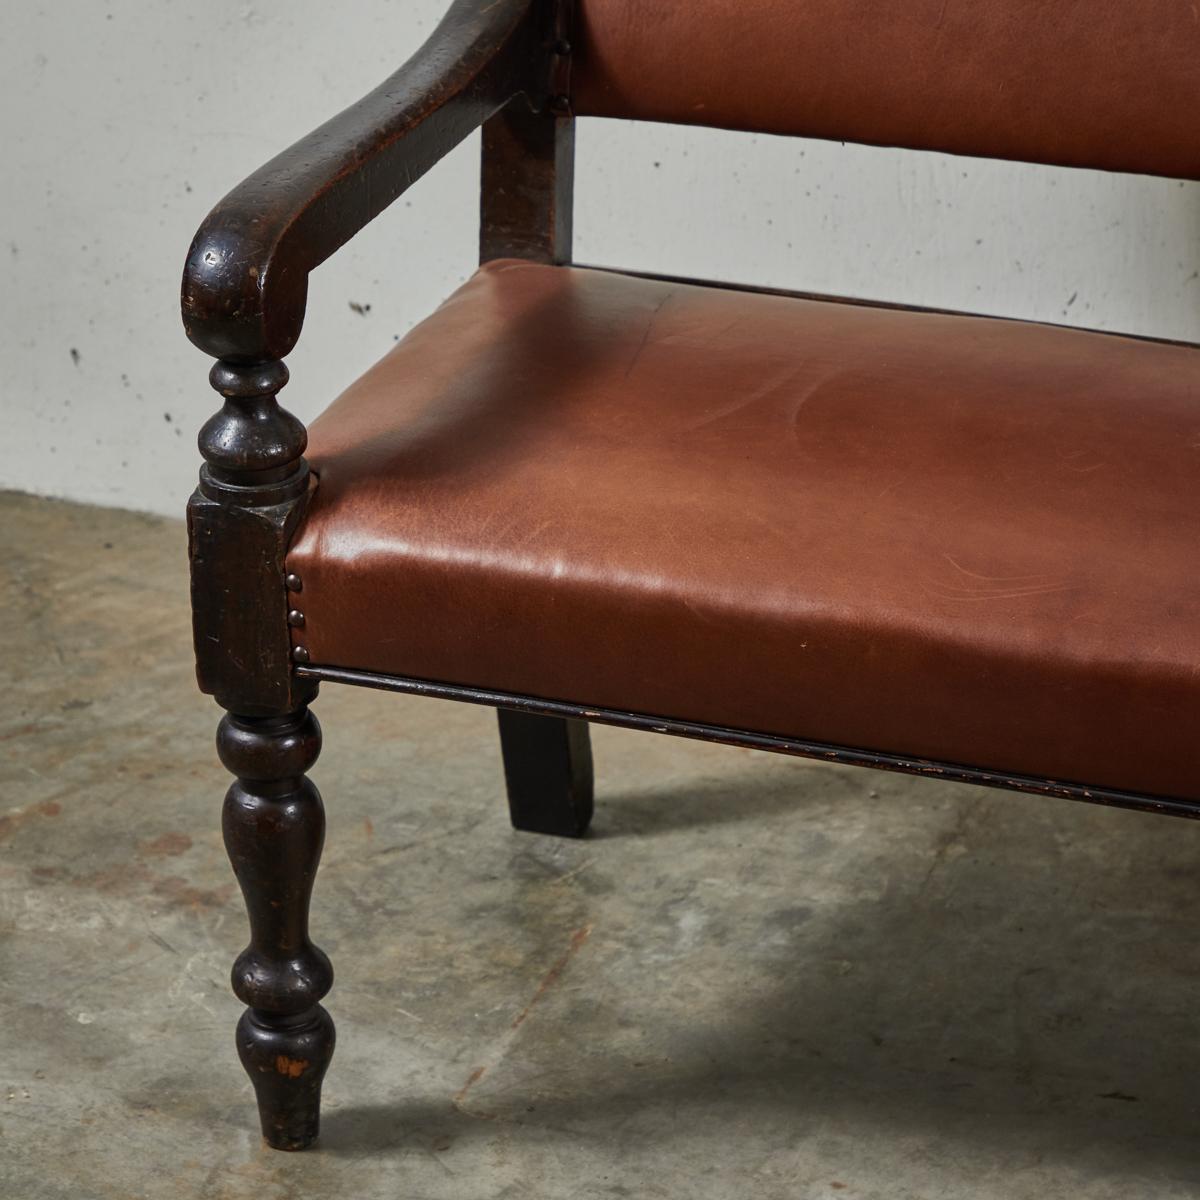 19th century English ebonized and upholstered leather bench from Masonic Lodge.